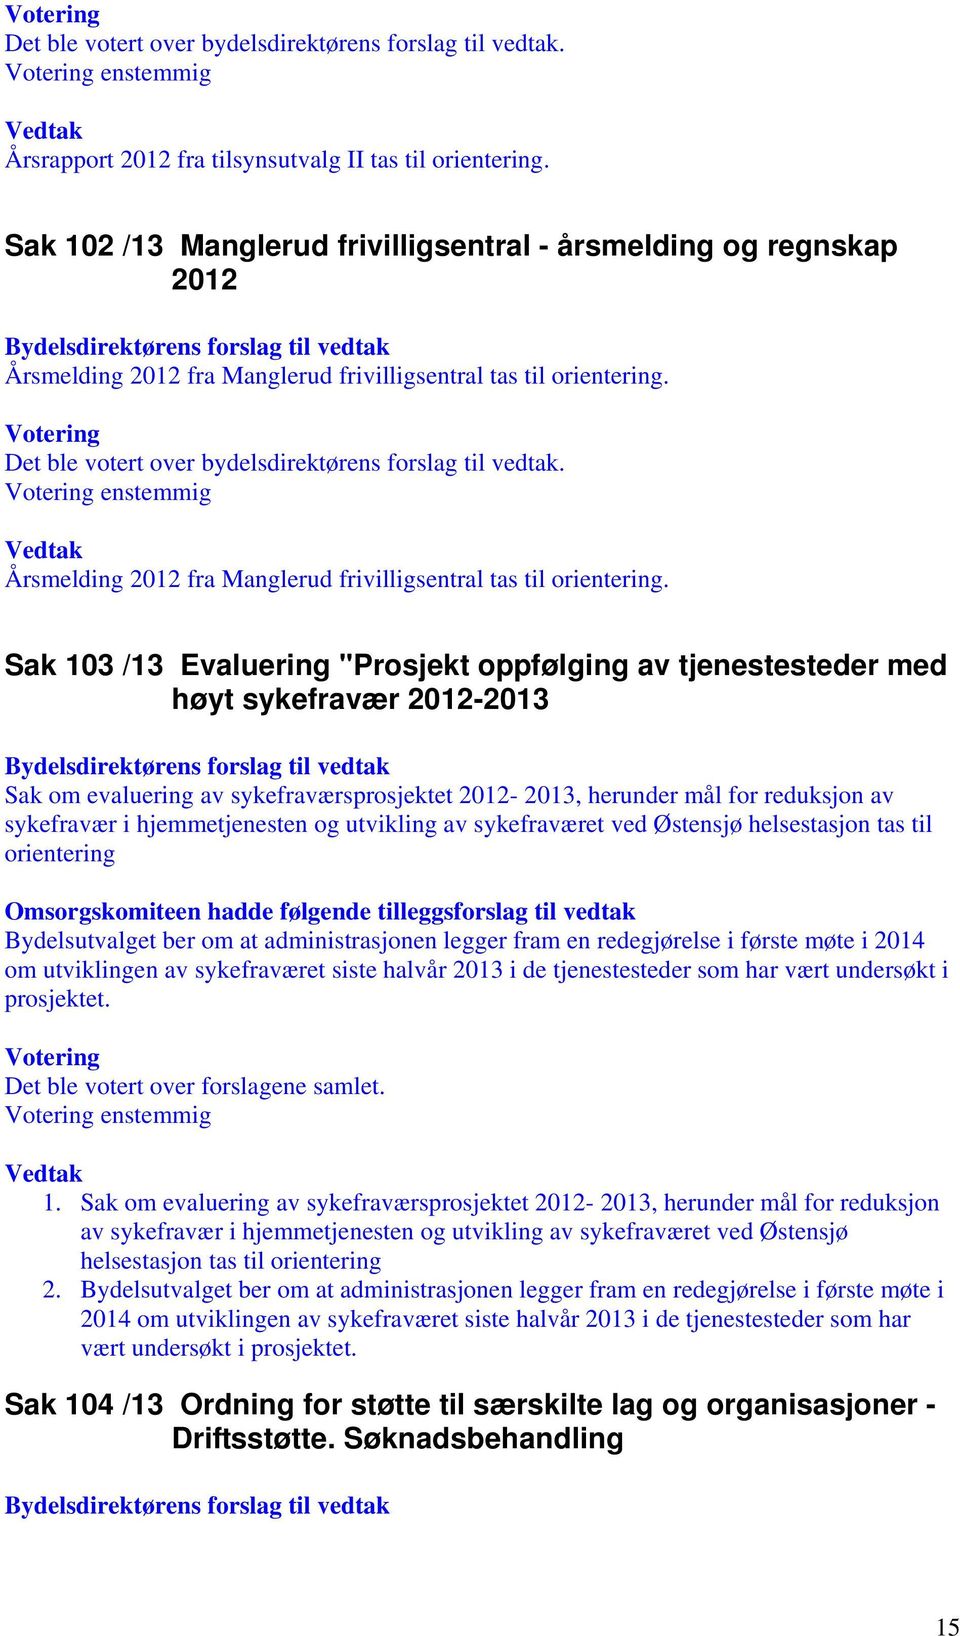 Sak 103 /13 Evaluering "Prosjekt oppfølging av tjenestesteder med høyt sykefravær 2012-2013 Sak om evaluering av sykefraværsprosjektet 2012-2013, herunder mål for reduksjon av sykefravær i